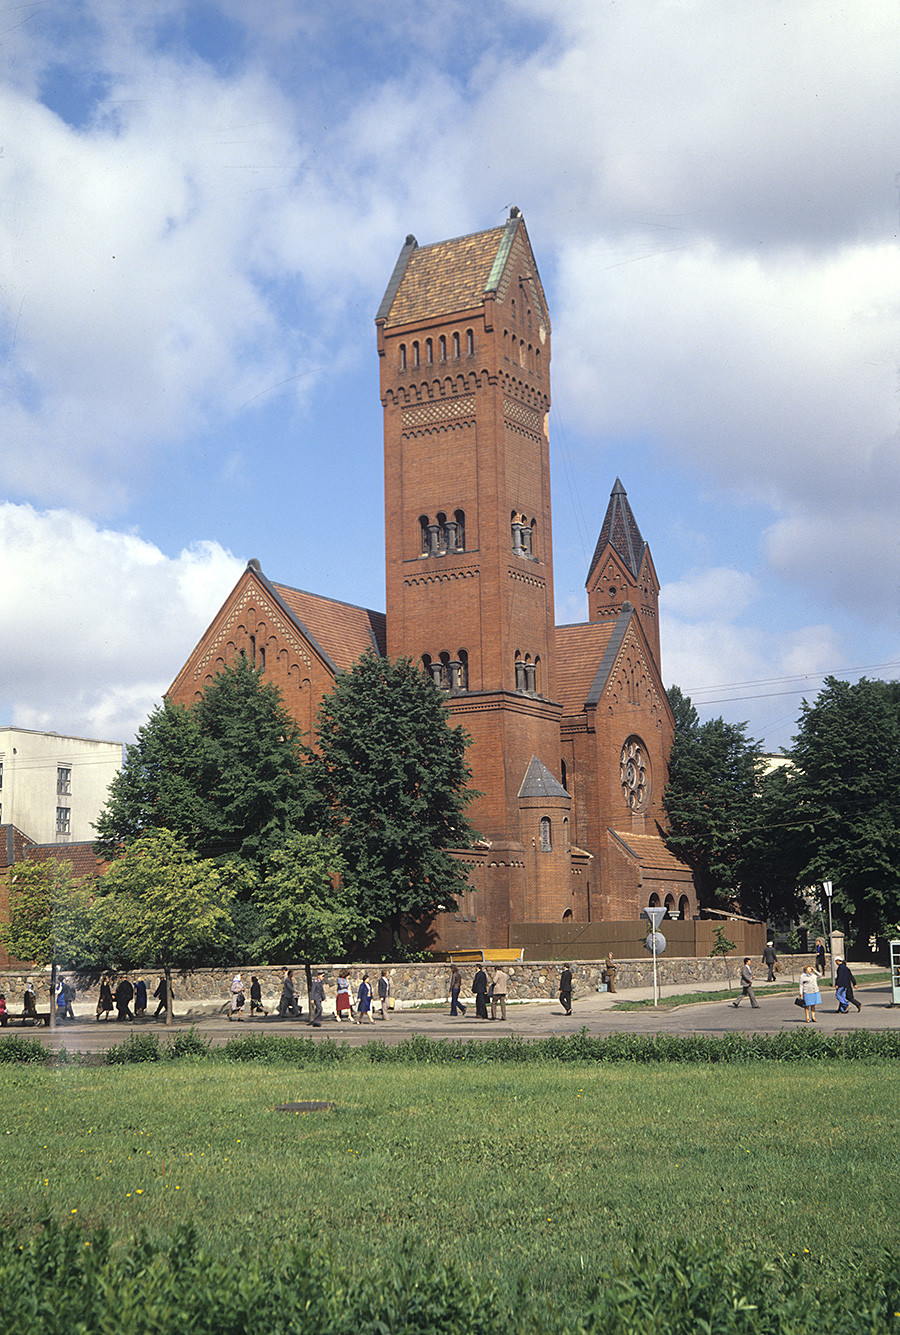 　ミンスクの赤い教会（聖シメオン・聖エレーナ教会）は1905年に建立された。ソ連時代には映画館にされ、それから映画人会館と映画博物館になった。ソ連崩壊後、教会としての役割を取り戻した。写真は1983年の様子。